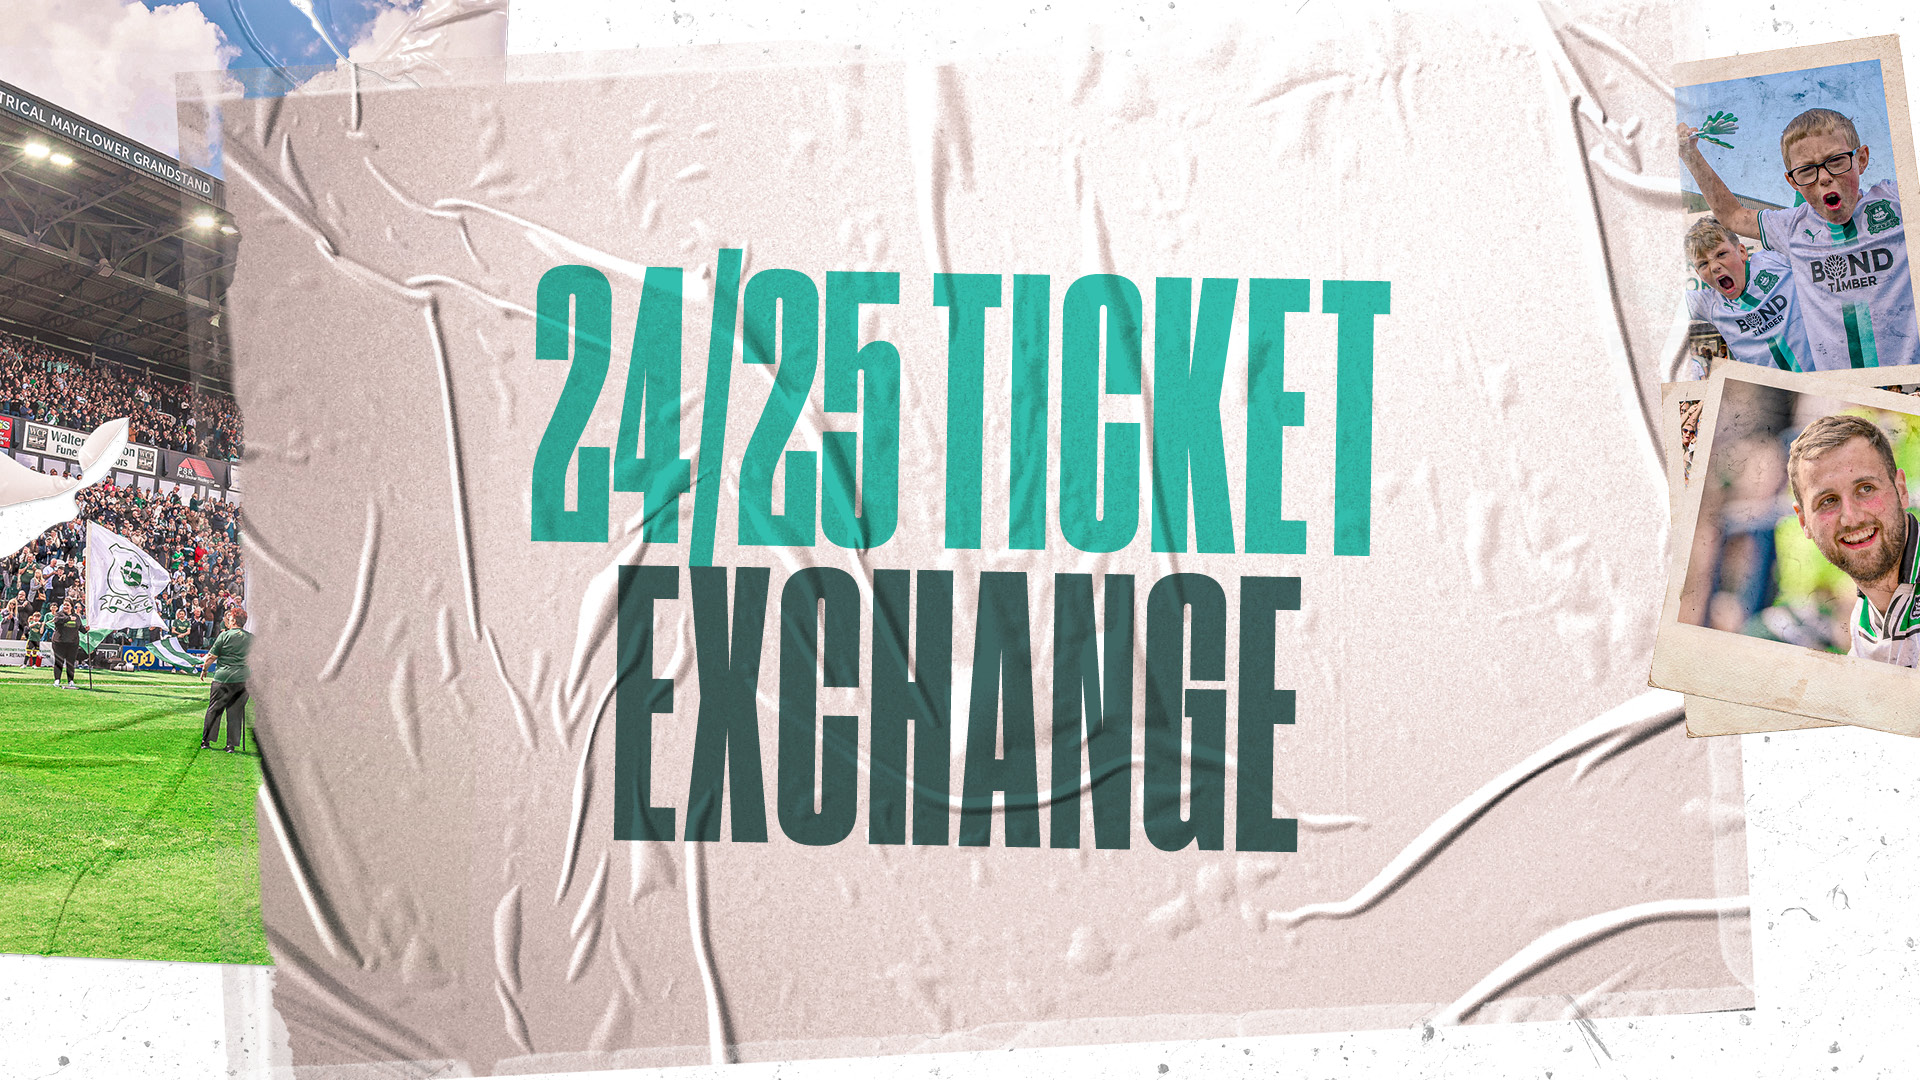 24/25 Ticket Exchange